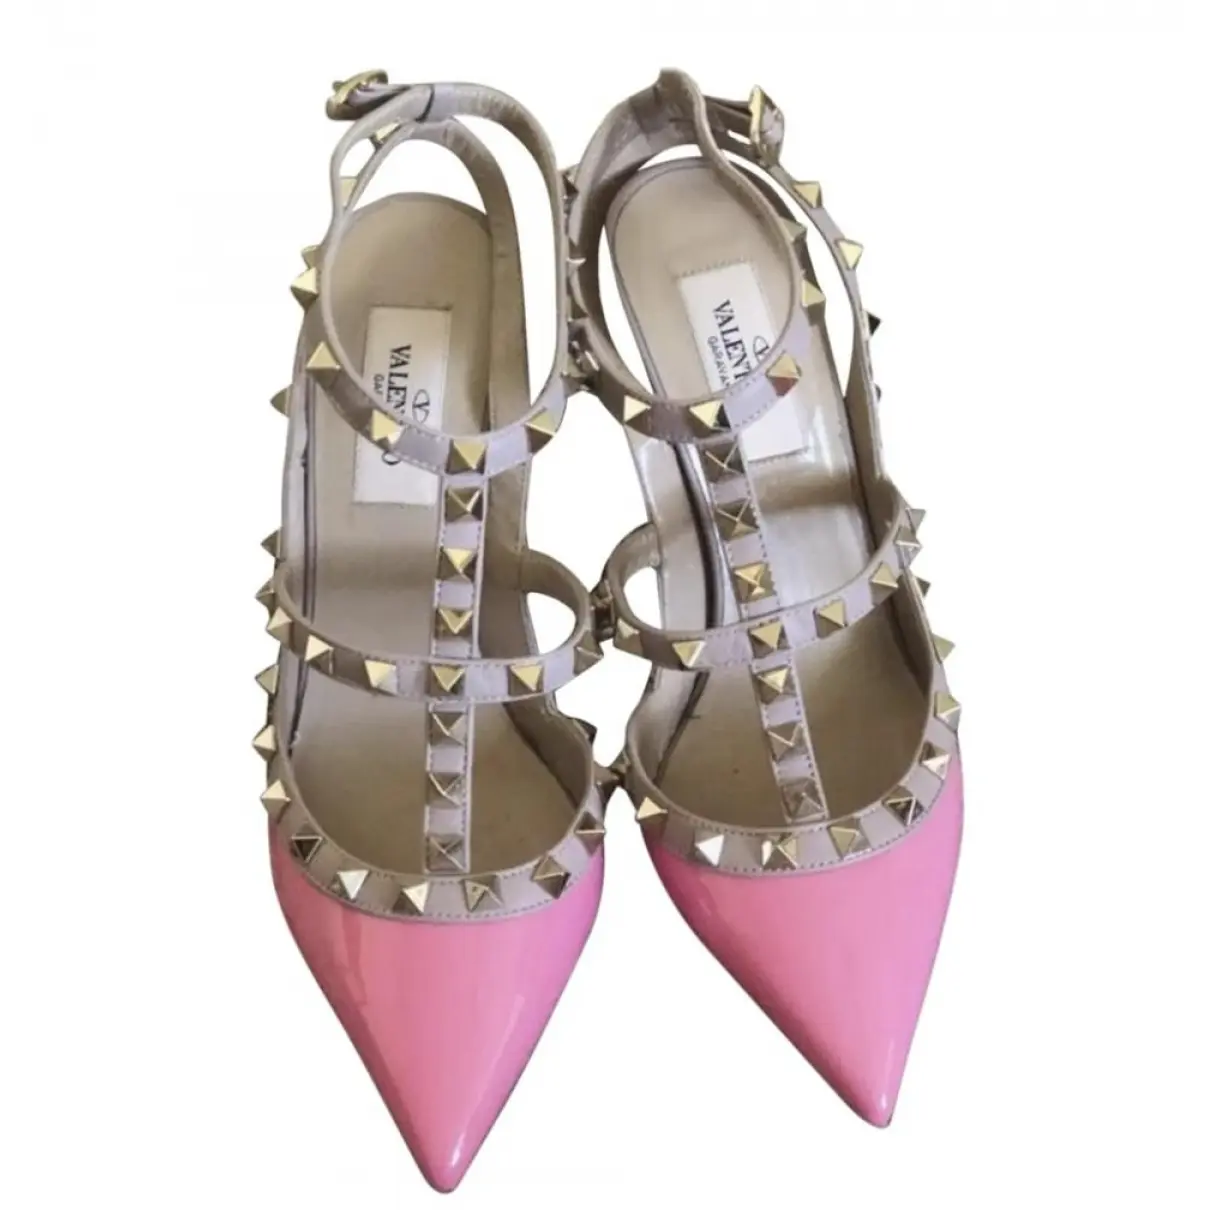 Valentino Garavani Rockstud leather heels for sale